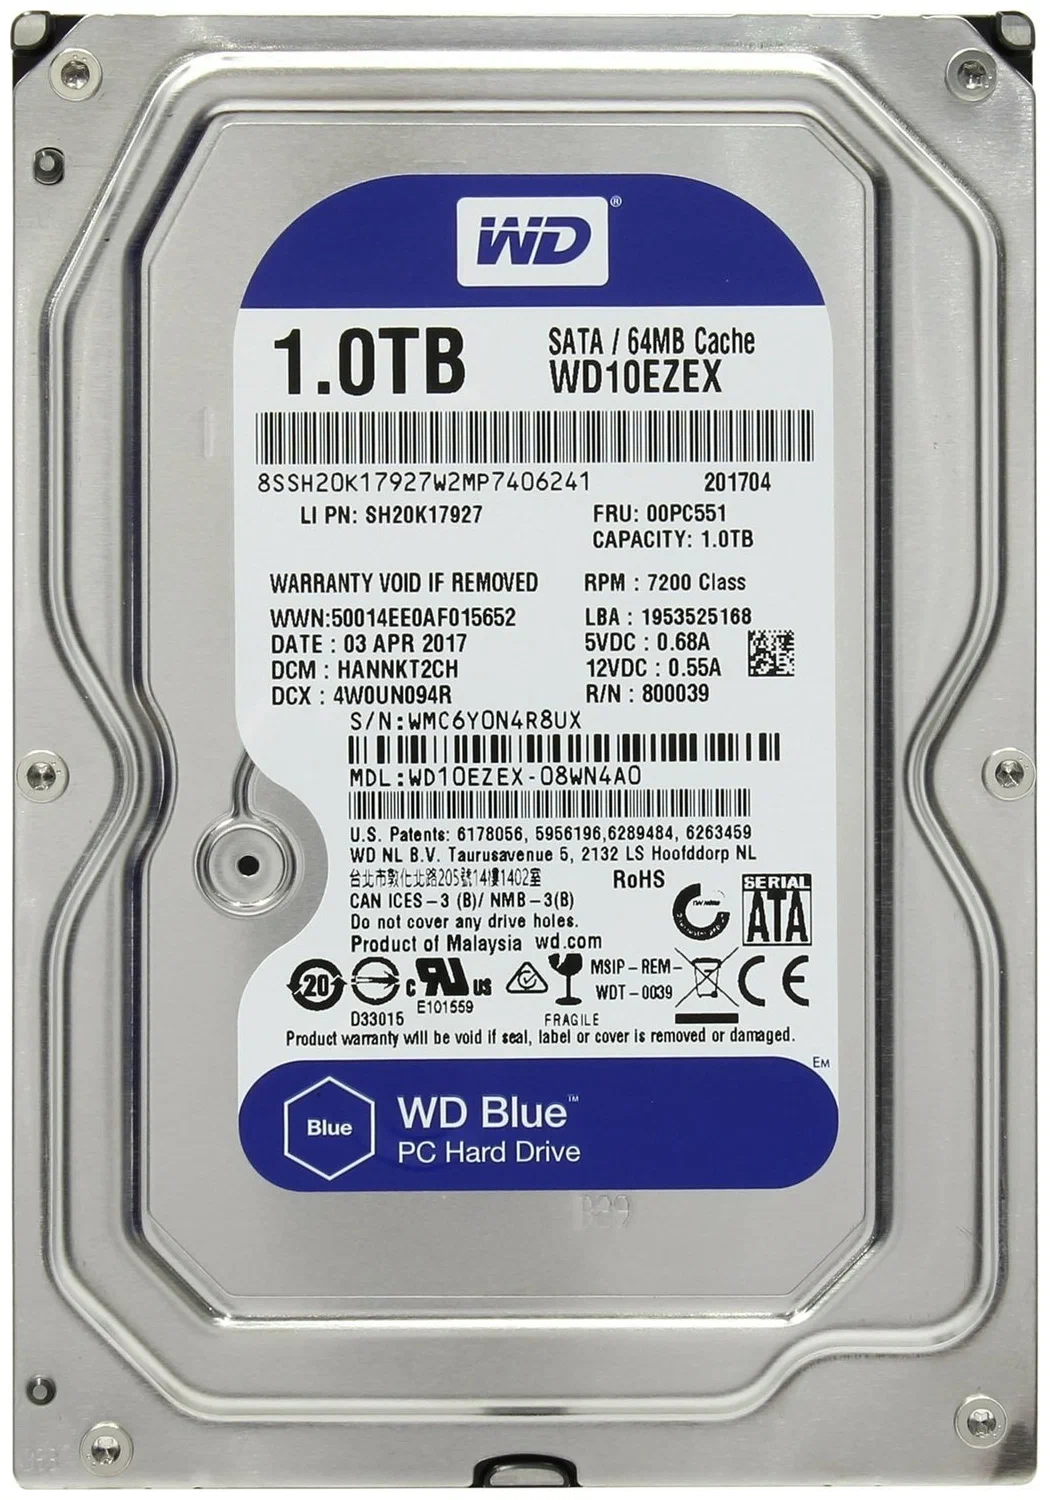 Жесткий диск Western Digital WD Blue 1 TB (WD10EZEX)